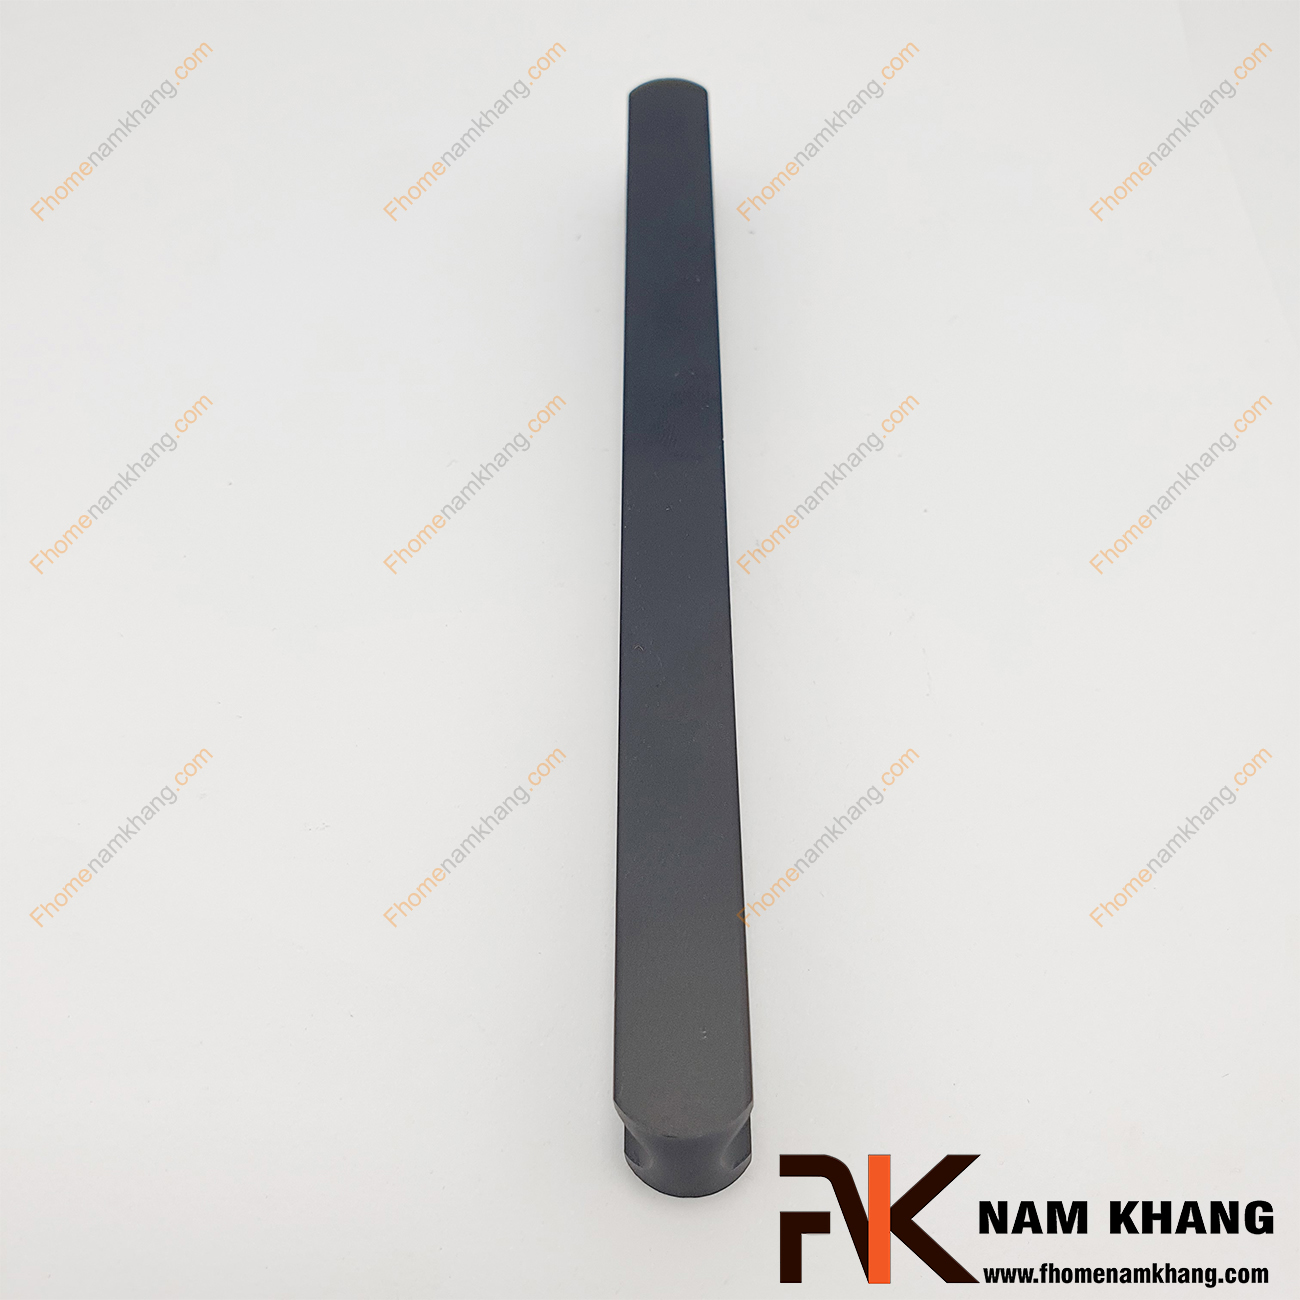 Tay nắm tủ dạng thanh dài nguyên khối màu đen NK001-DB dạng tay nắm tủ thanh dài nguyên khối được sản xuất từ chất liệu hợp kim cao cấp và xử lý bề mặt kỹ thuật cao.